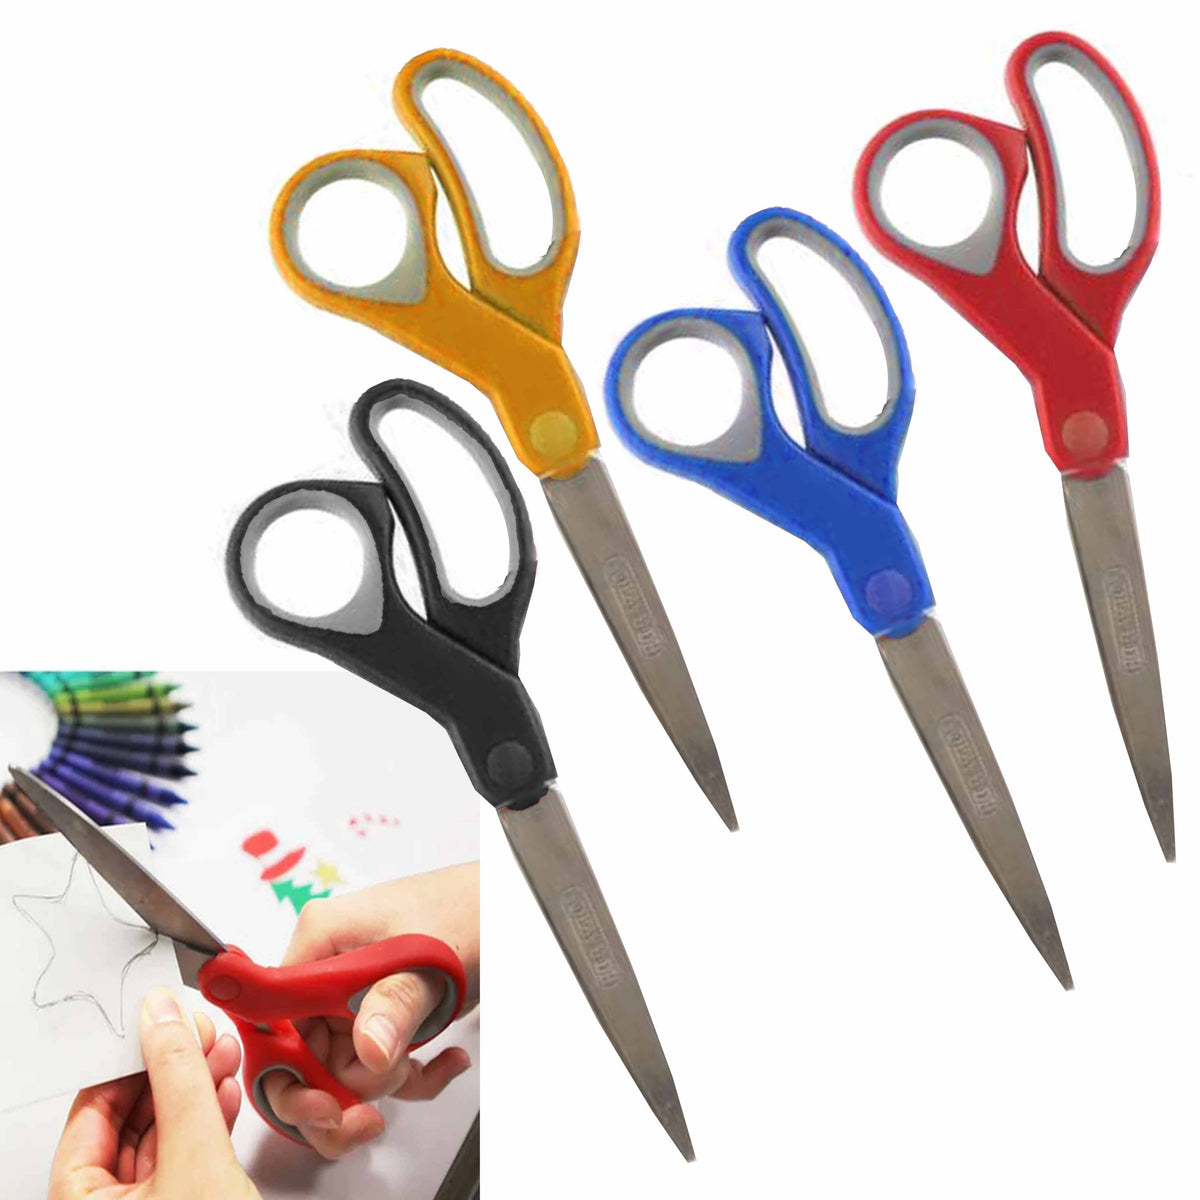 Stanley 8 Ergonomic All-Purpose Scissors, 2-Pack